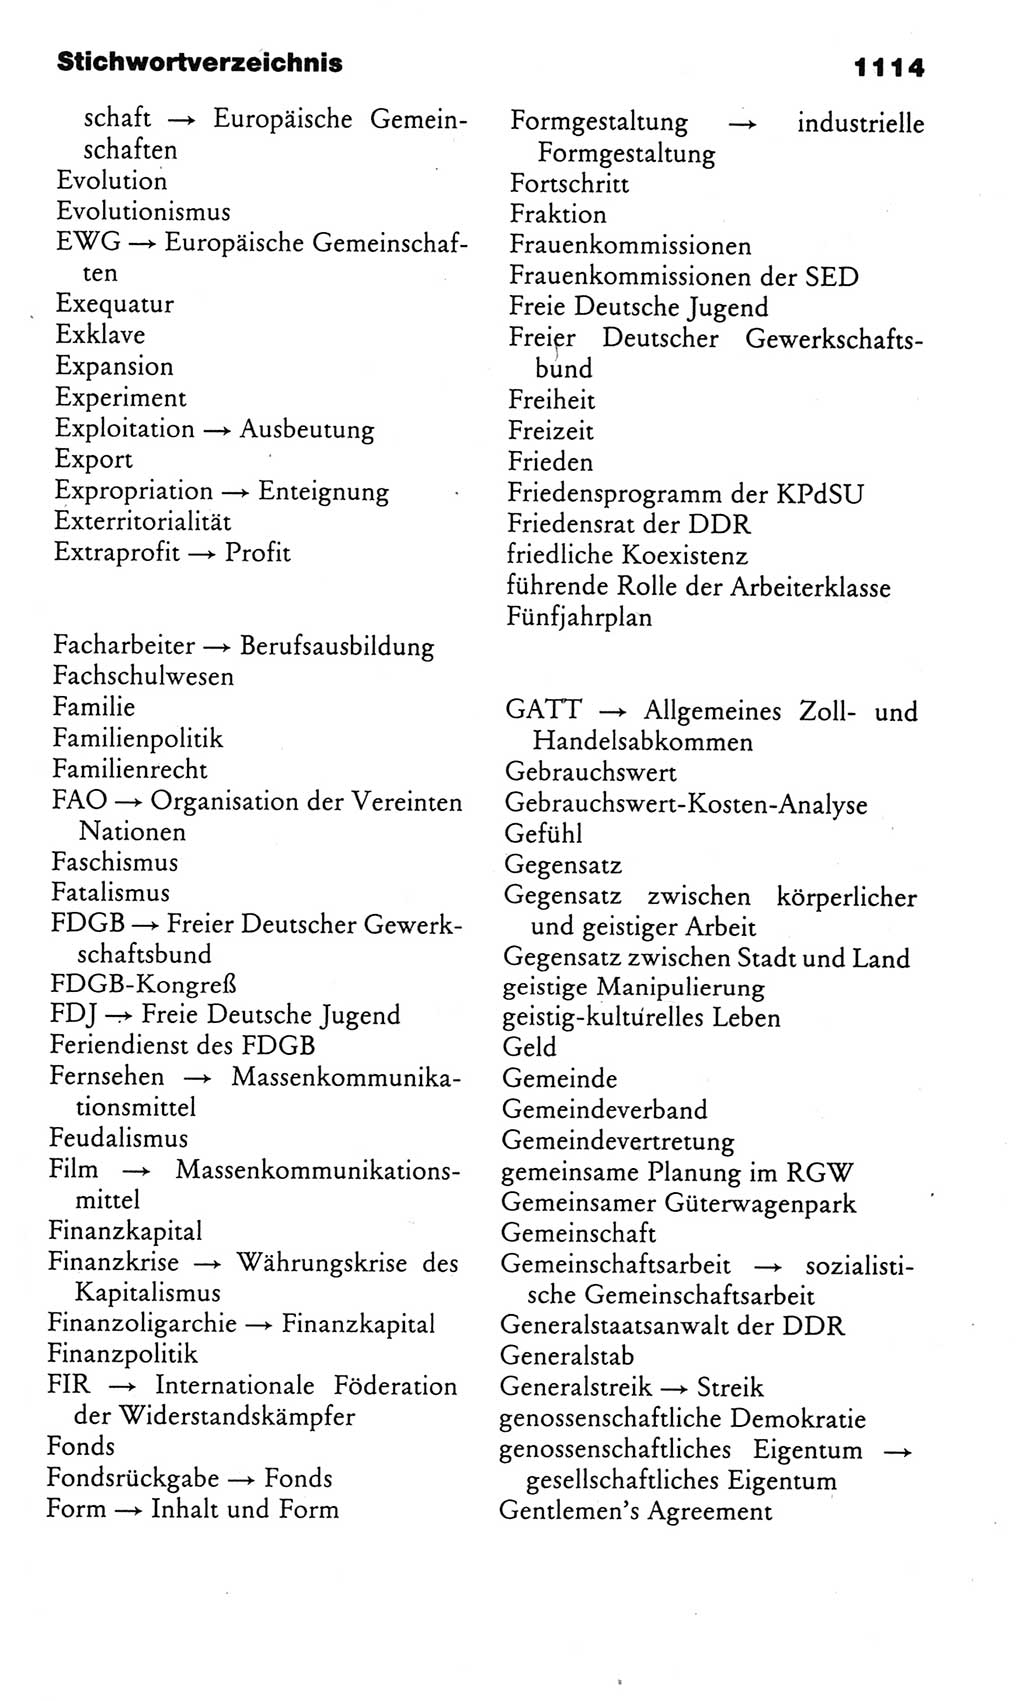 Kleines politisches Wörterbuch [Deutsche Demokratische Republik (DDR)] 1985, Seite 1114 (Kl. pol. Wb. DDR 1985, S. 1114)